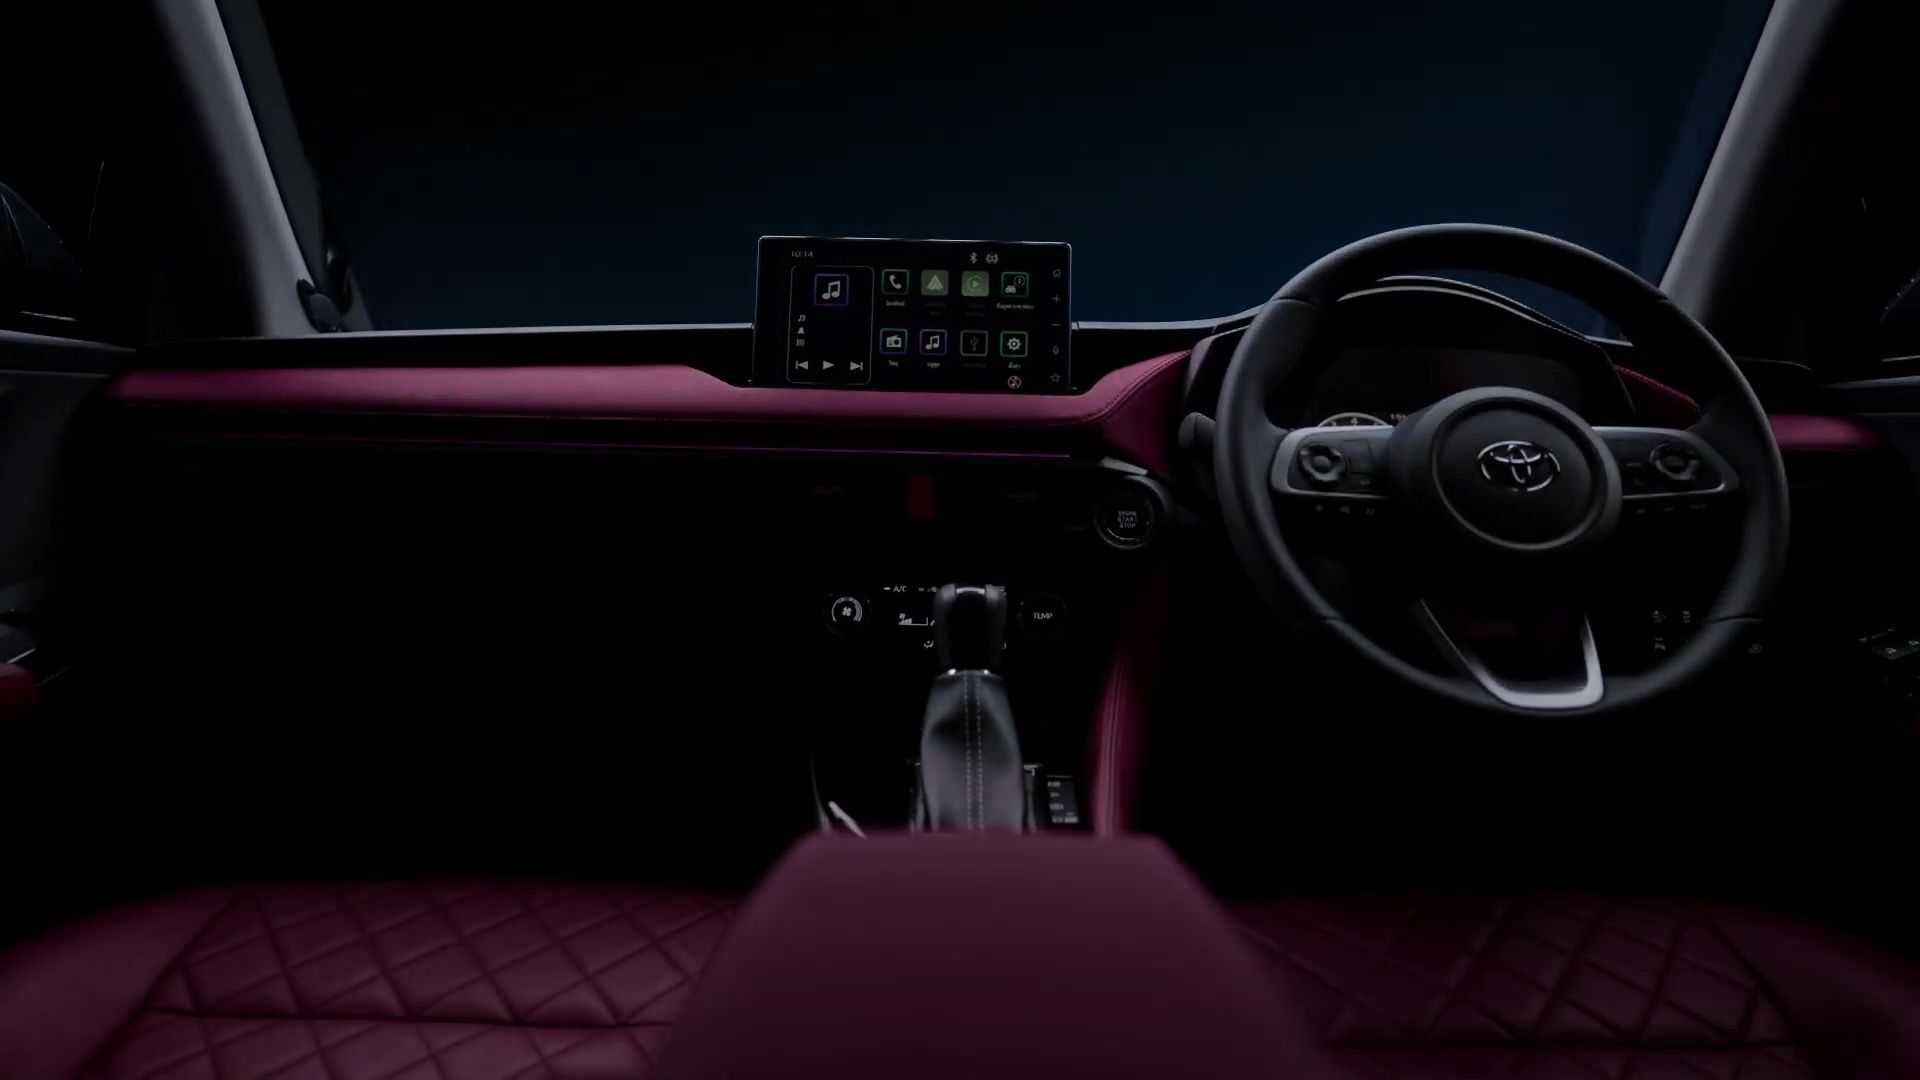 teaser do novo Toyota Yaris mostrando o painel